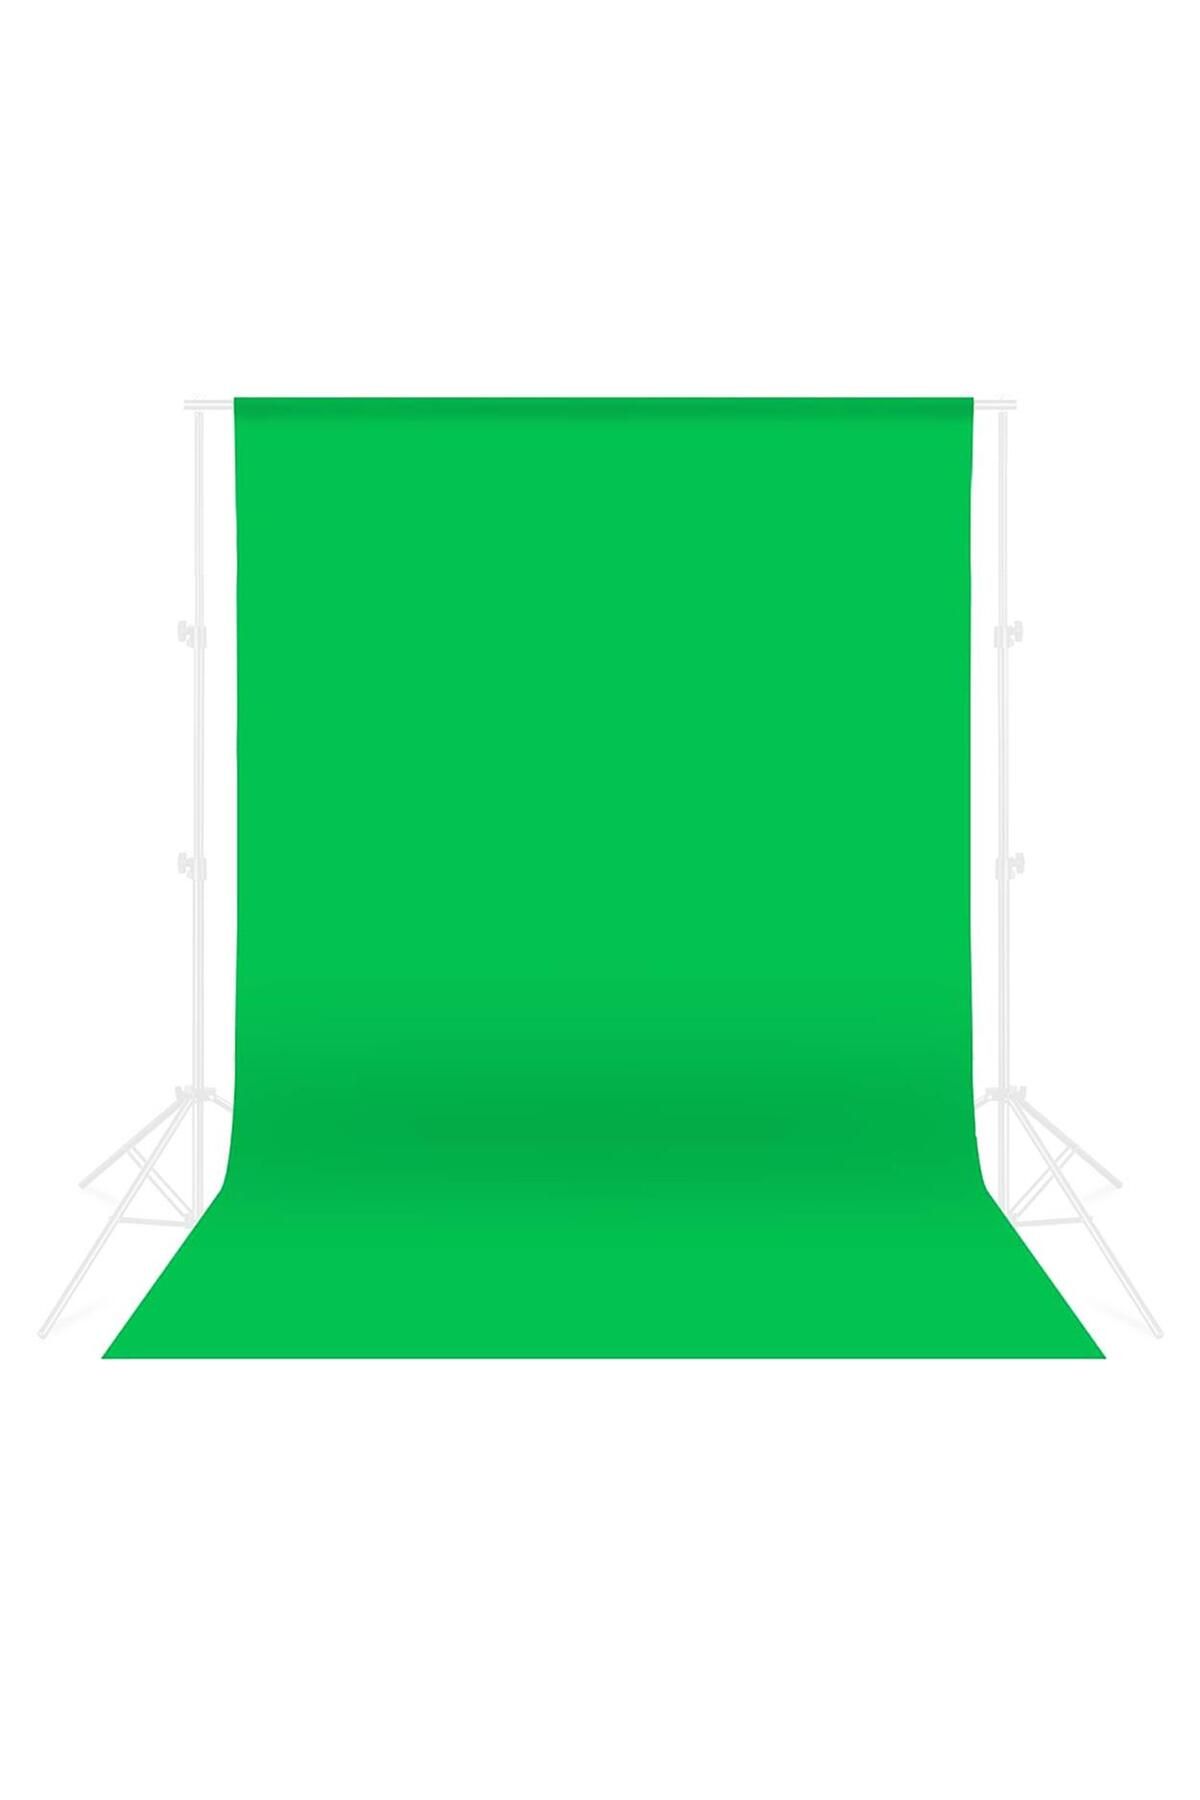 cazipshop Green Screen Greenbox Yeşil Fon Perde 2x3